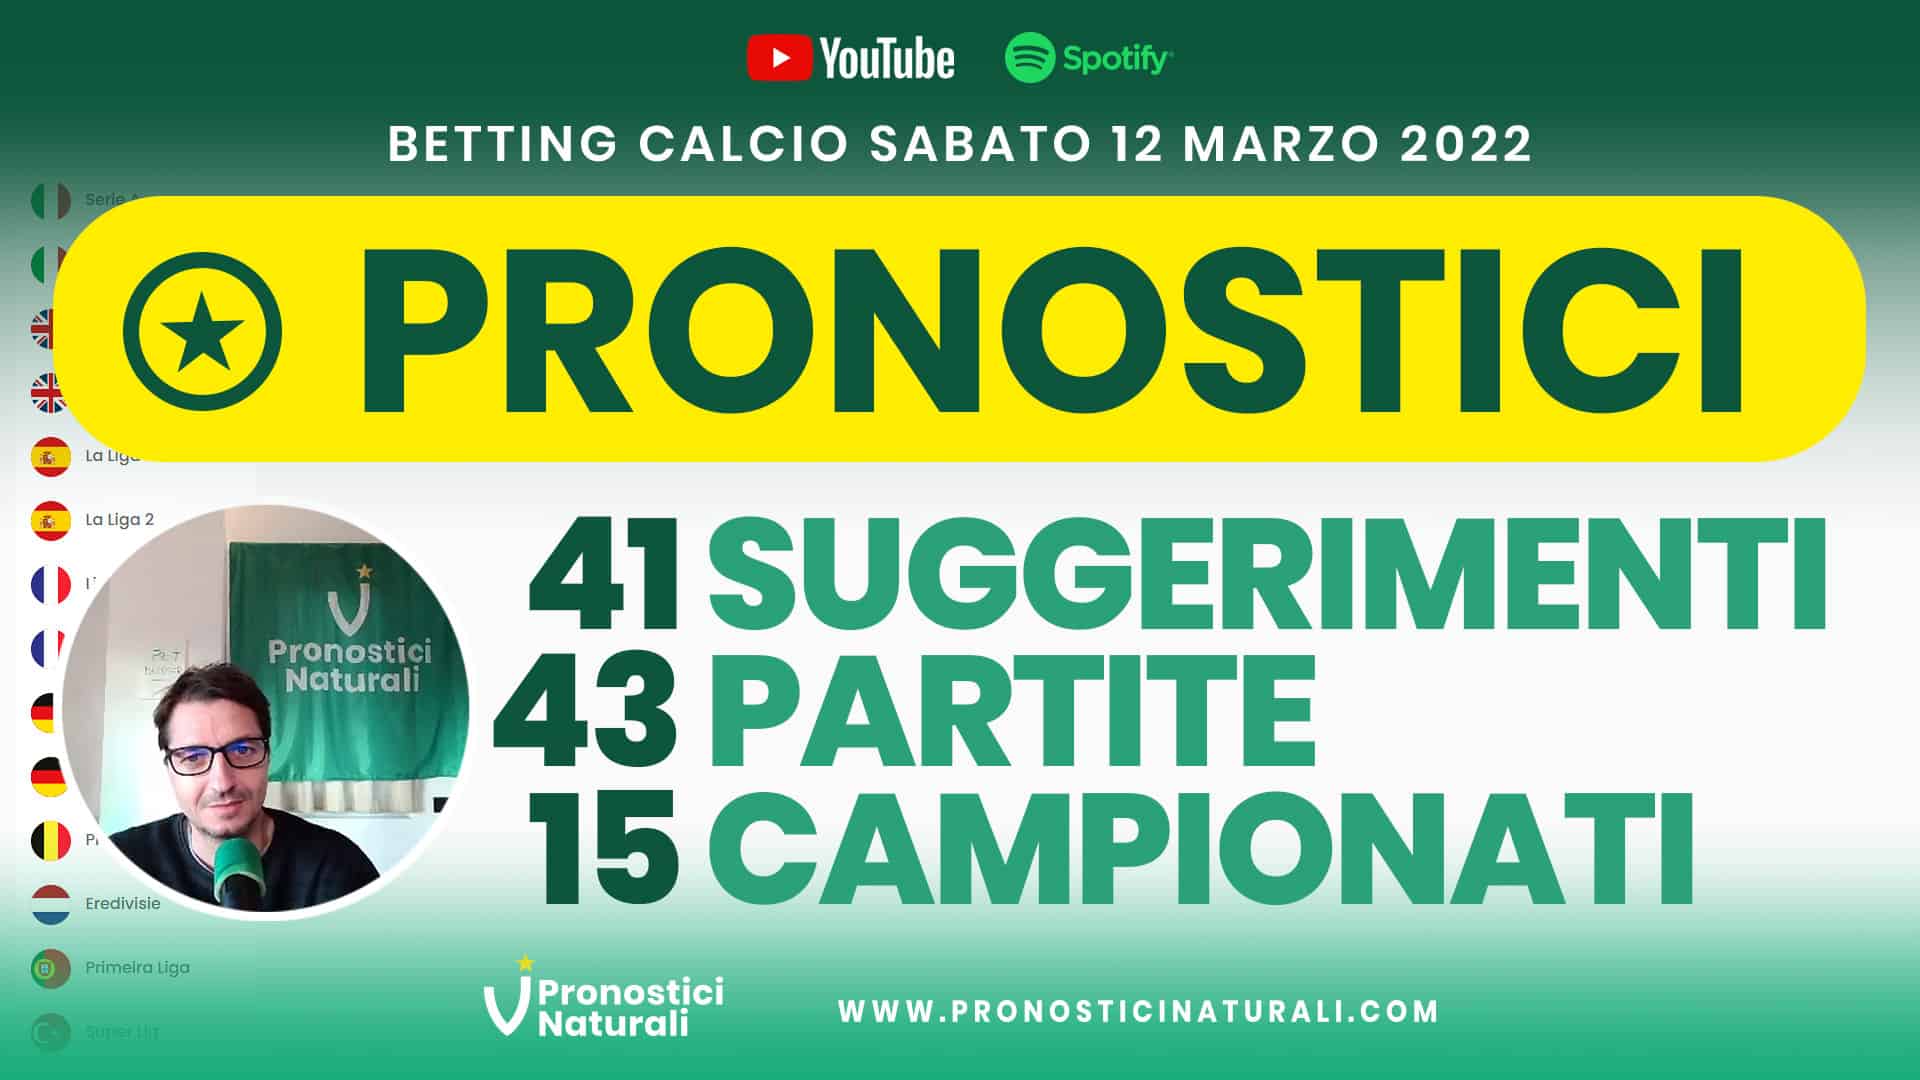 Pronostici Naturali Video Analisi Scommesse Betting Calcio Analisi Pre Partite Sabato 12 Marzo 2022